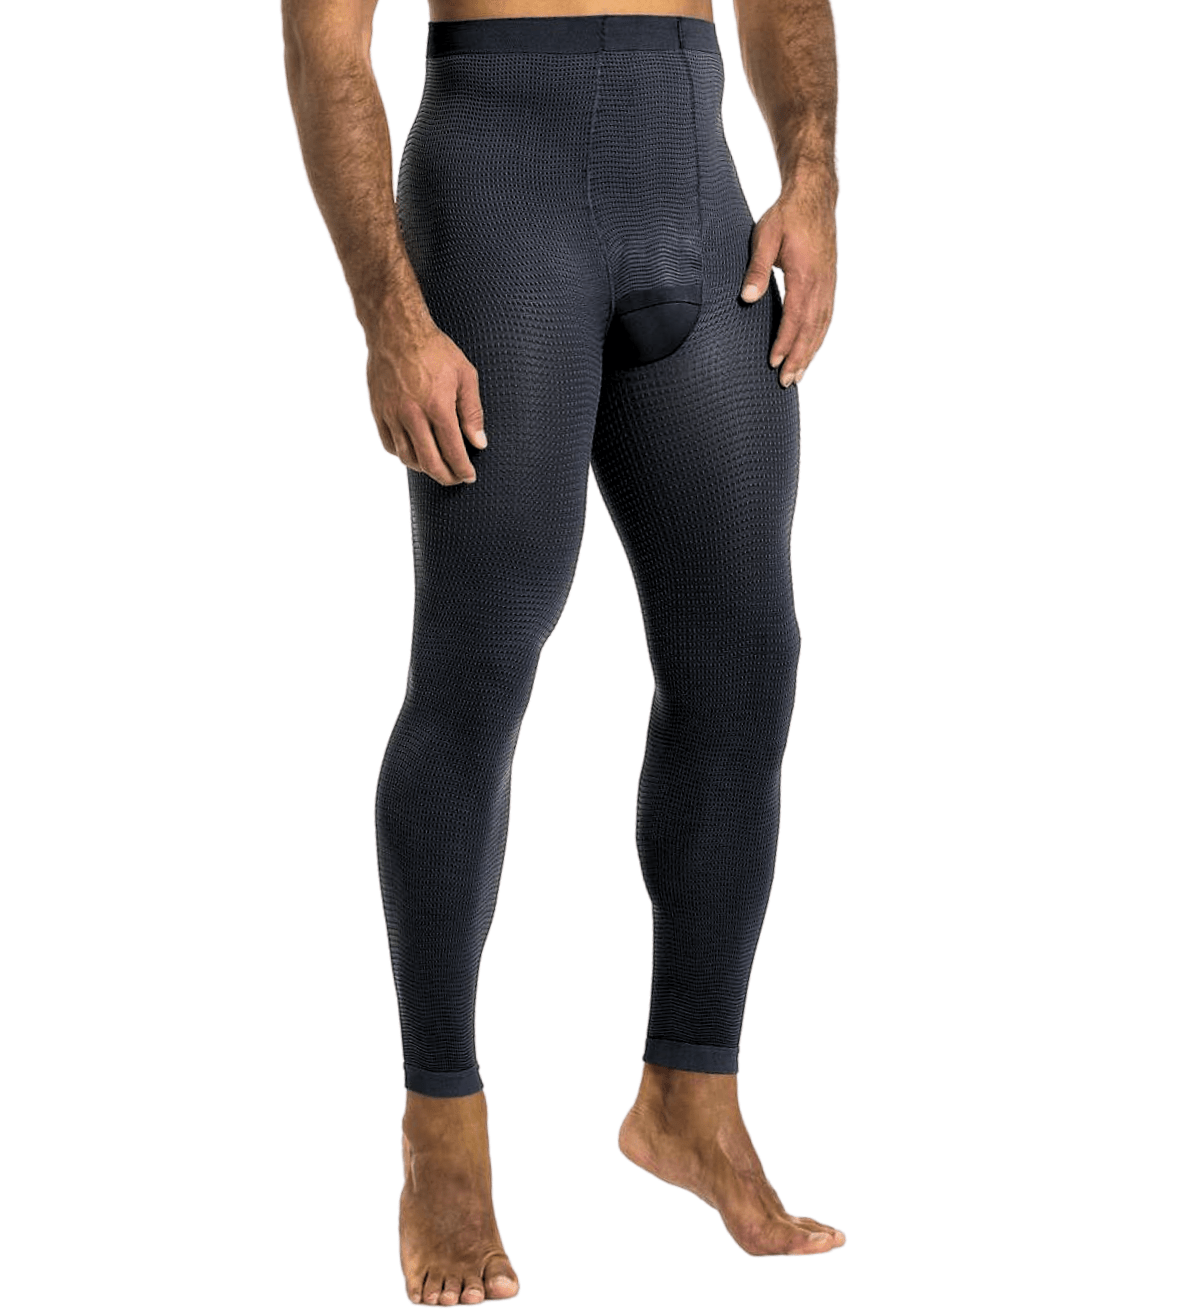 Elastic medical compression leggings unisex, compression 18